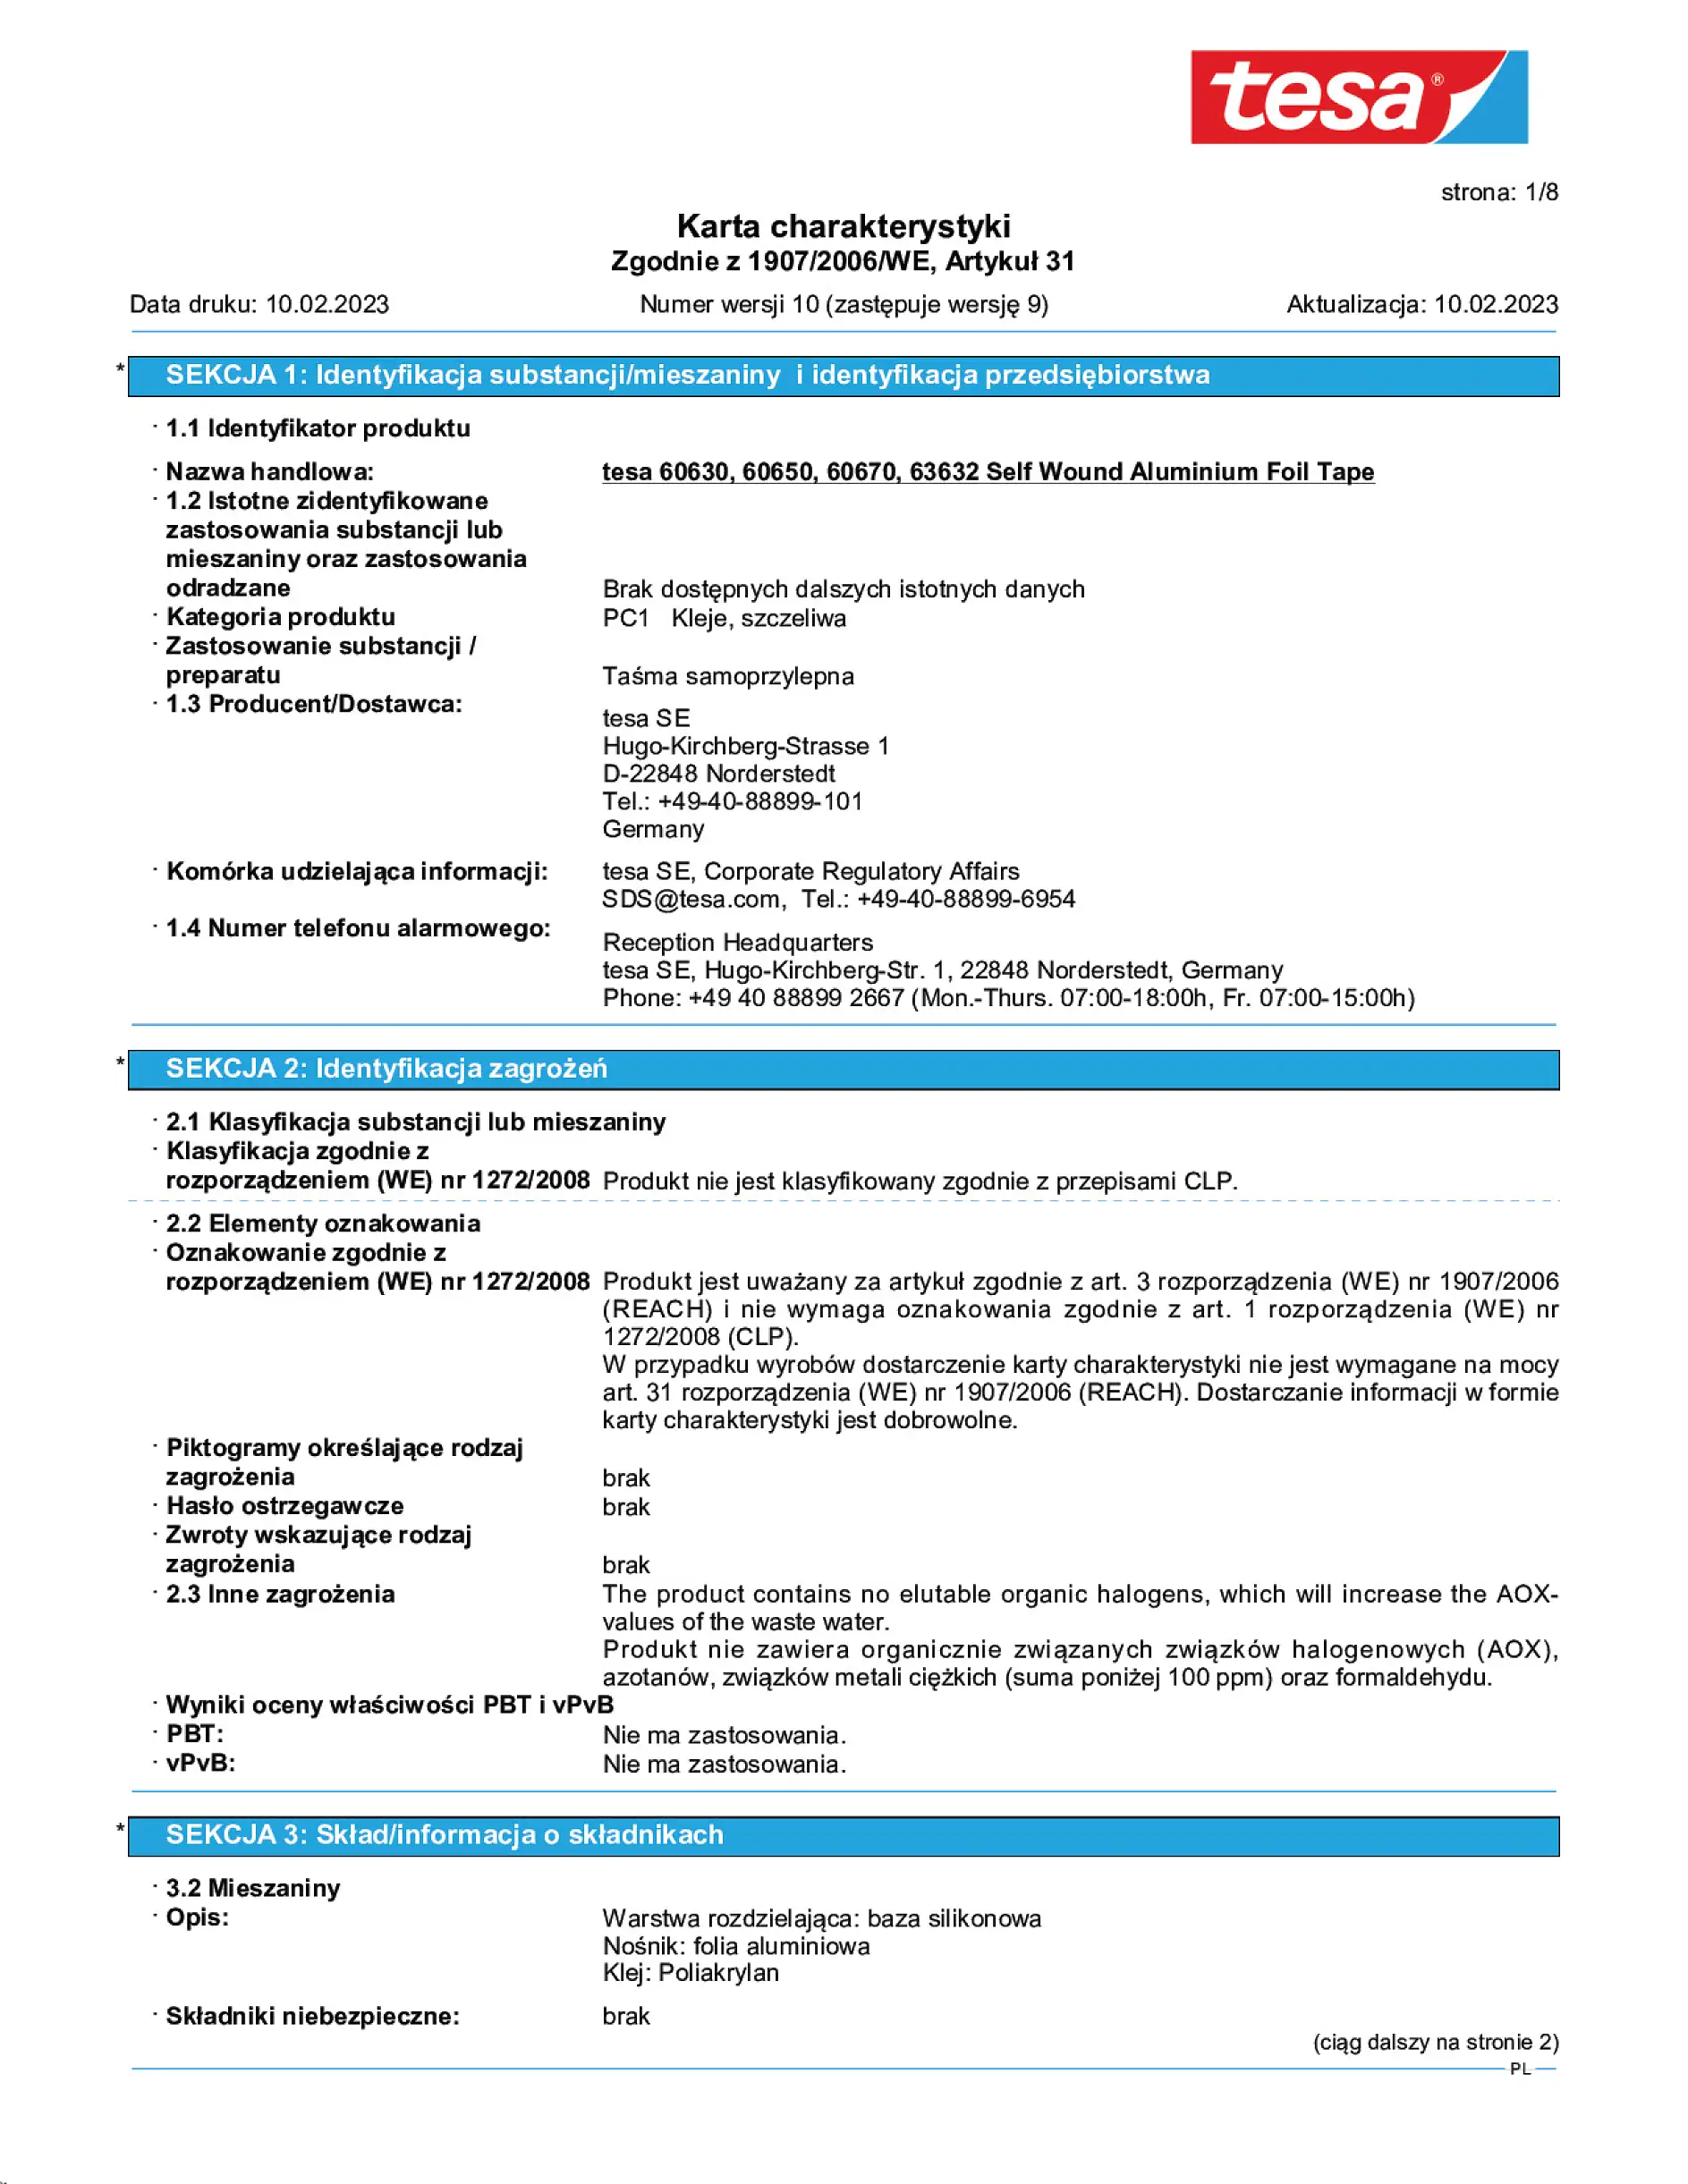 Safety data sheet_tesa® 60650_pl-PL_v10